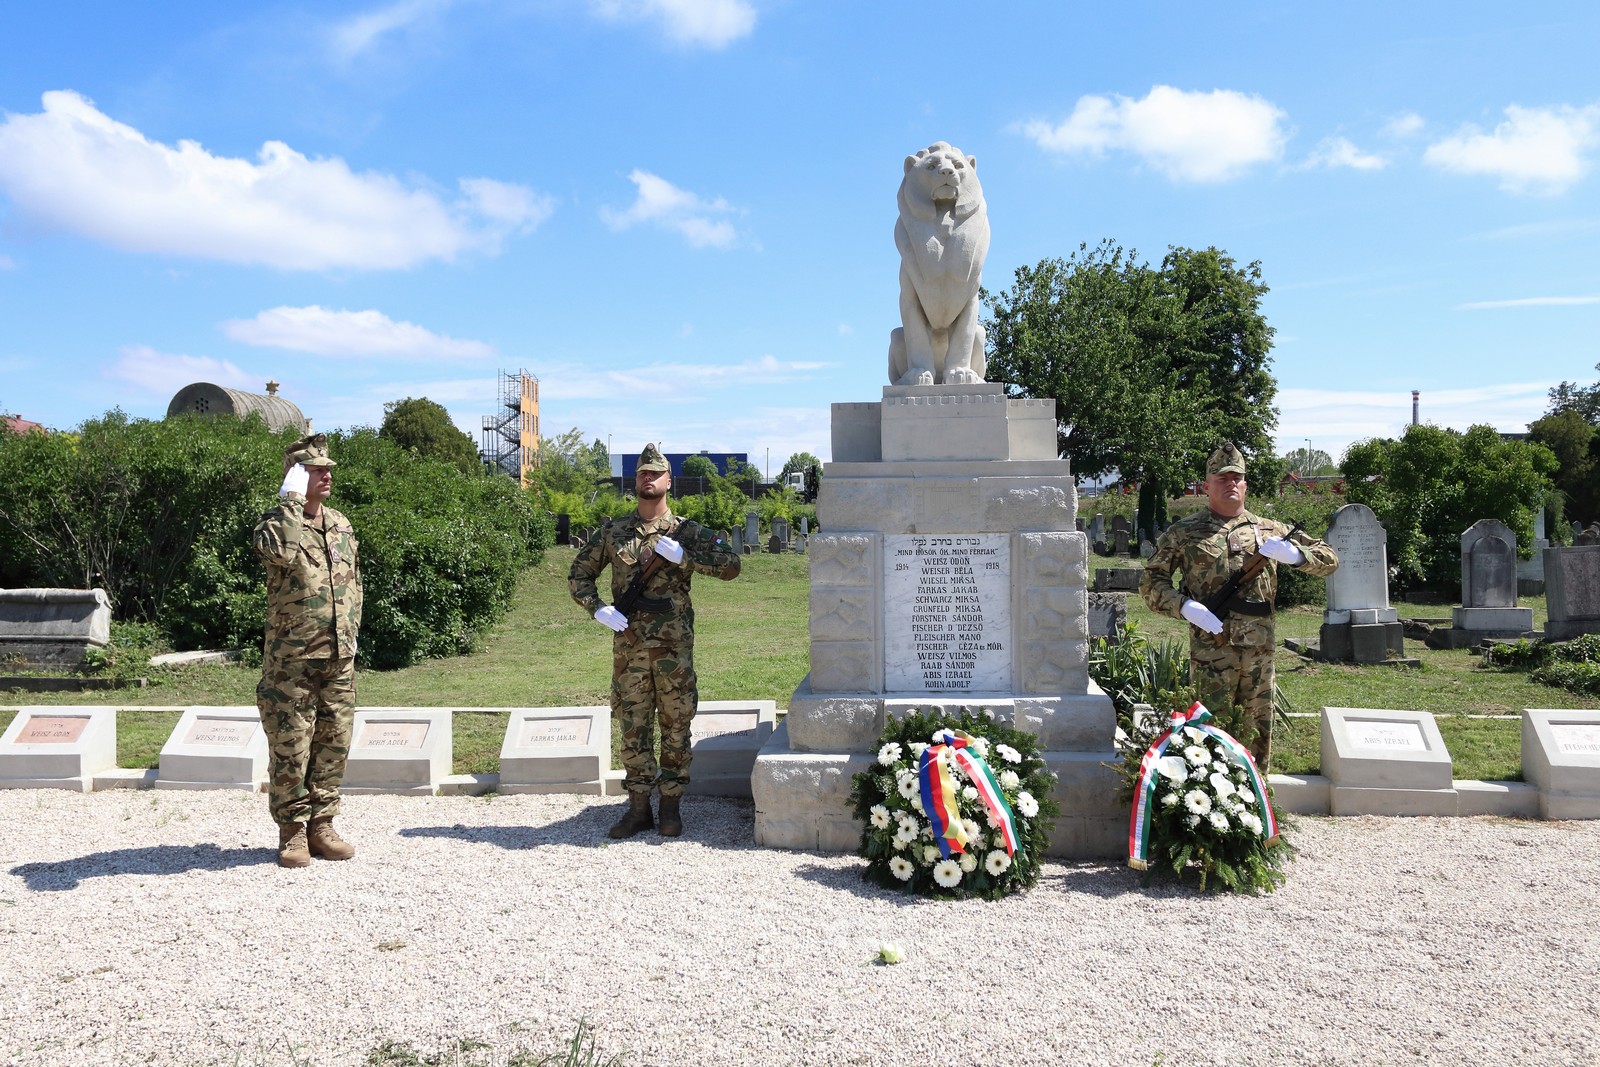 A háborúkban elesett magyar katonák emléke előtt tisztelegtek városszerte